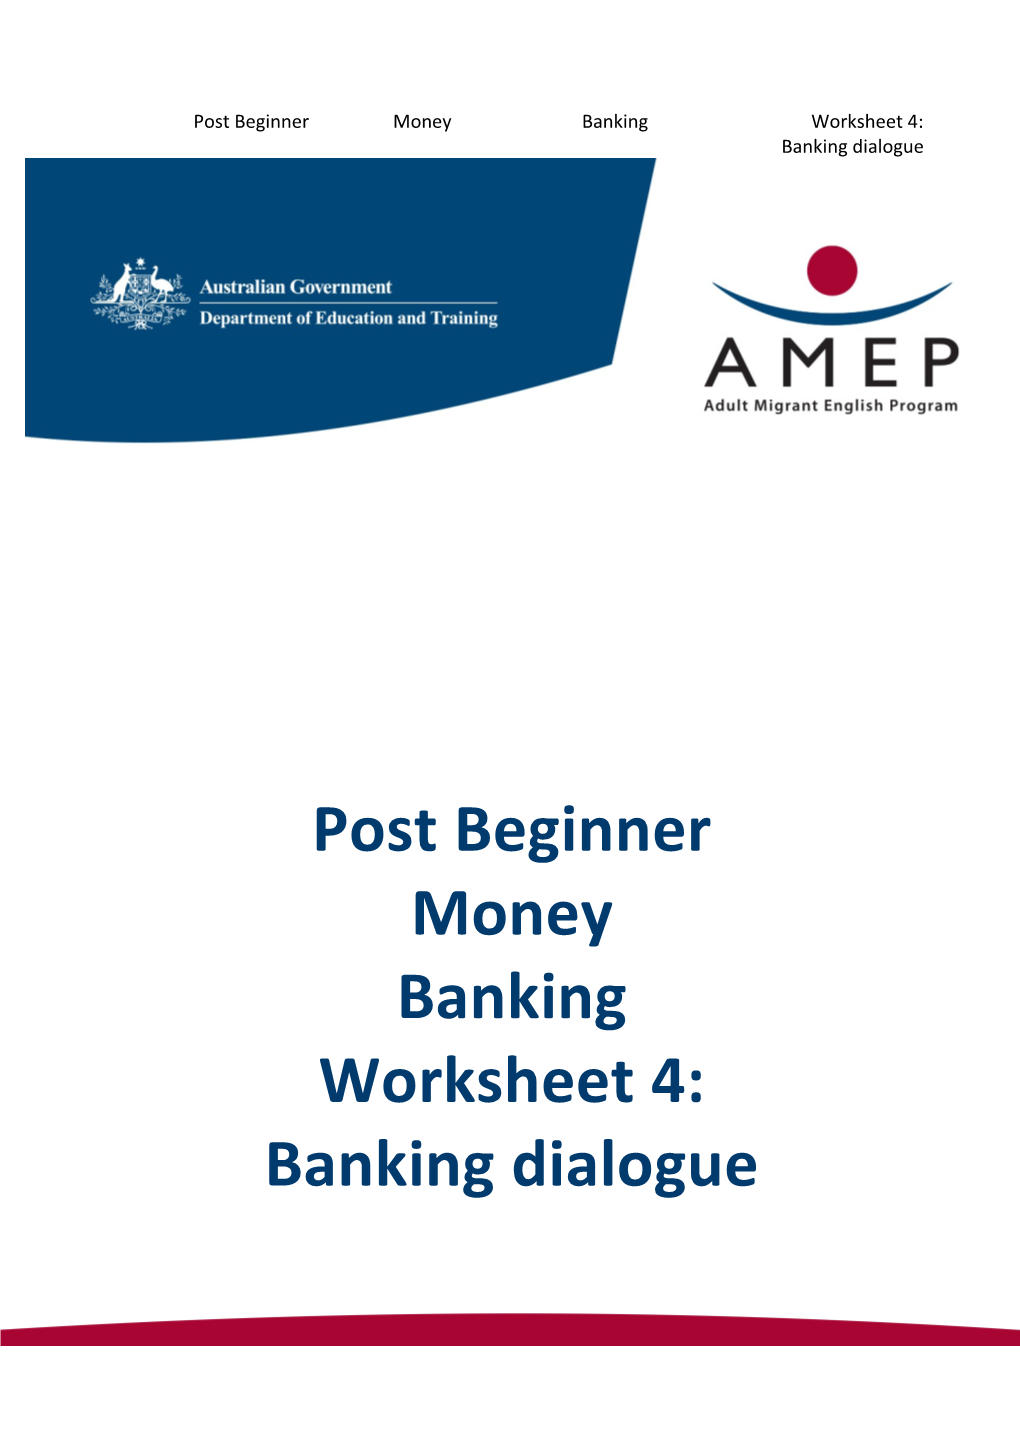 Post Beginner Money Banking Worksheet 4: Banking Dialogue